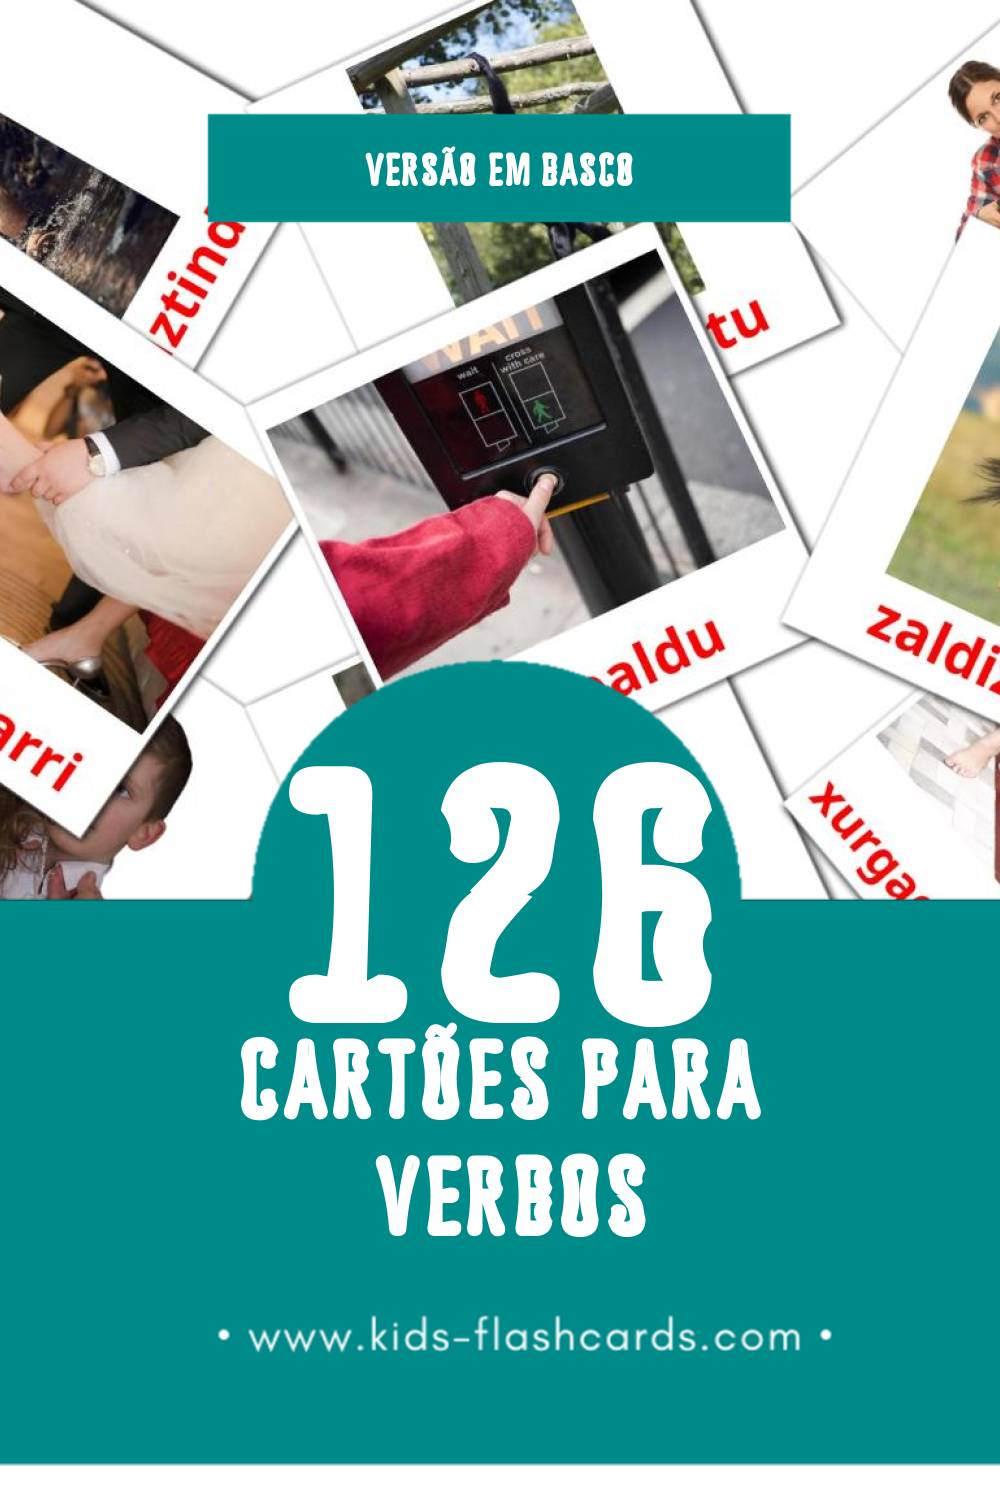 Flashcards de Aditzak Visuais para Toddlers (126 cartões em Basco)